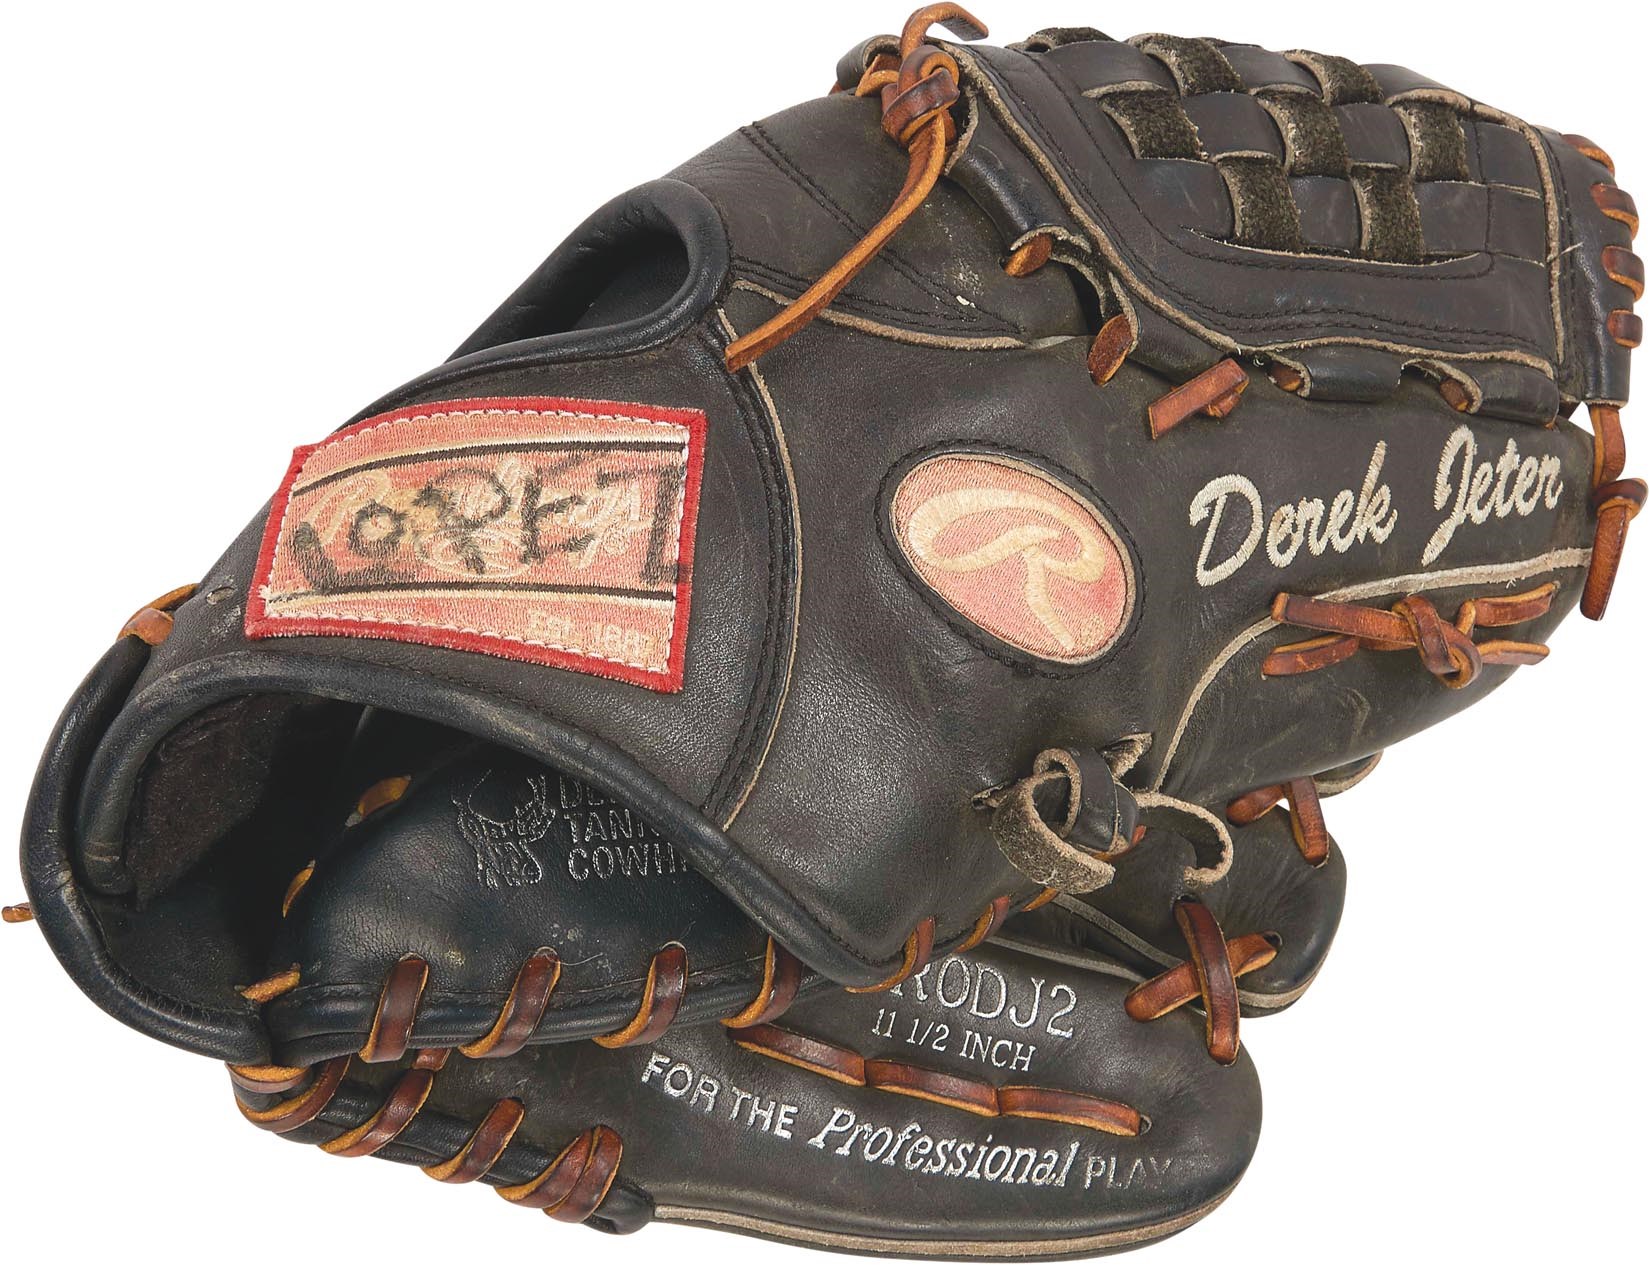 Circa 2005 Derek Jeter Game Worn Glove from ex-Yankee w/his LOA